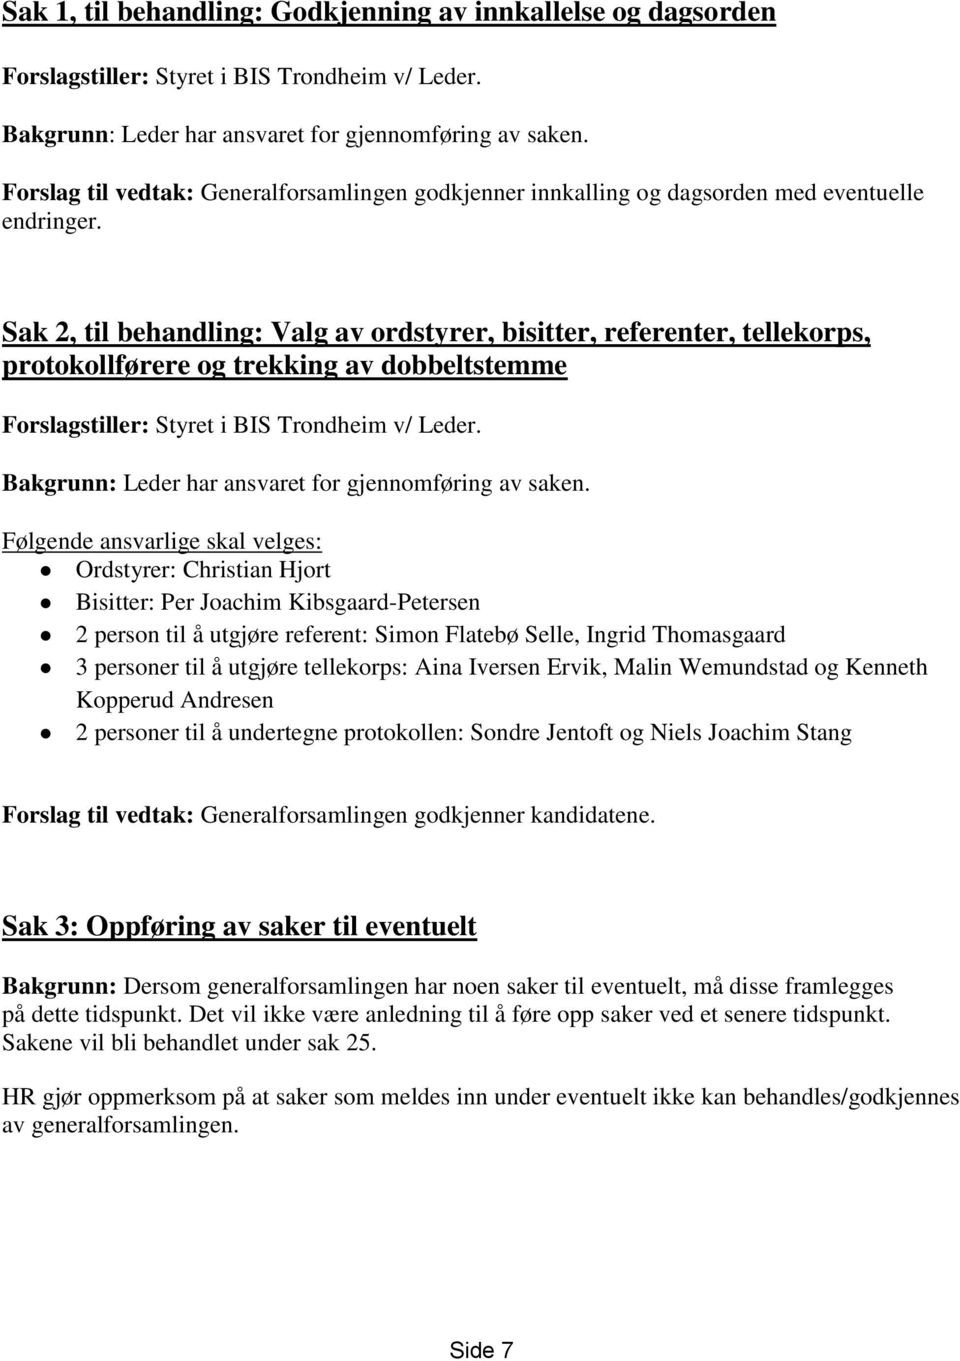 Sak 2, til behandling: Valg av ordstyrer, bisitter, referenter, tellekorps, protokollførere og trekking av dobbeltstemme Forslagstiller: Styret i BIS Trondheim v/ Leder.